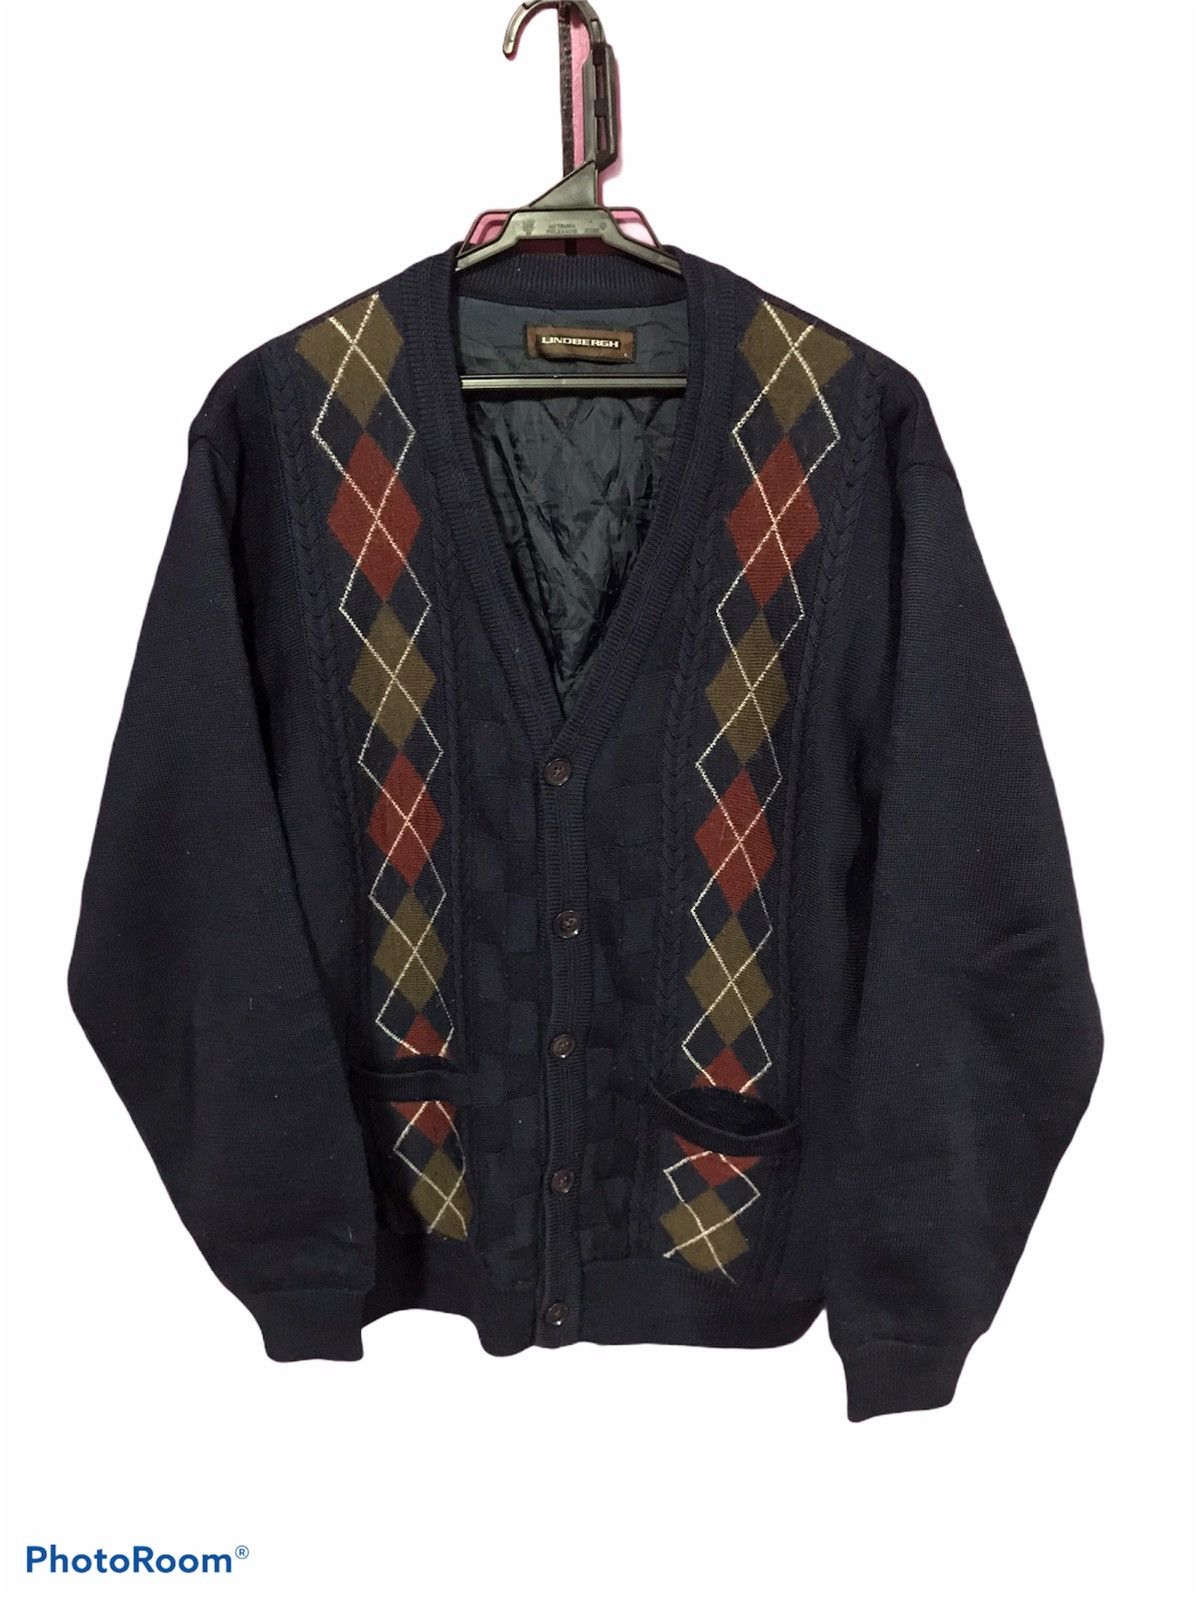 Check styling ideas for「JWA Souffle Yarn Fairisle Sweater、JWA Corduroy Pants」